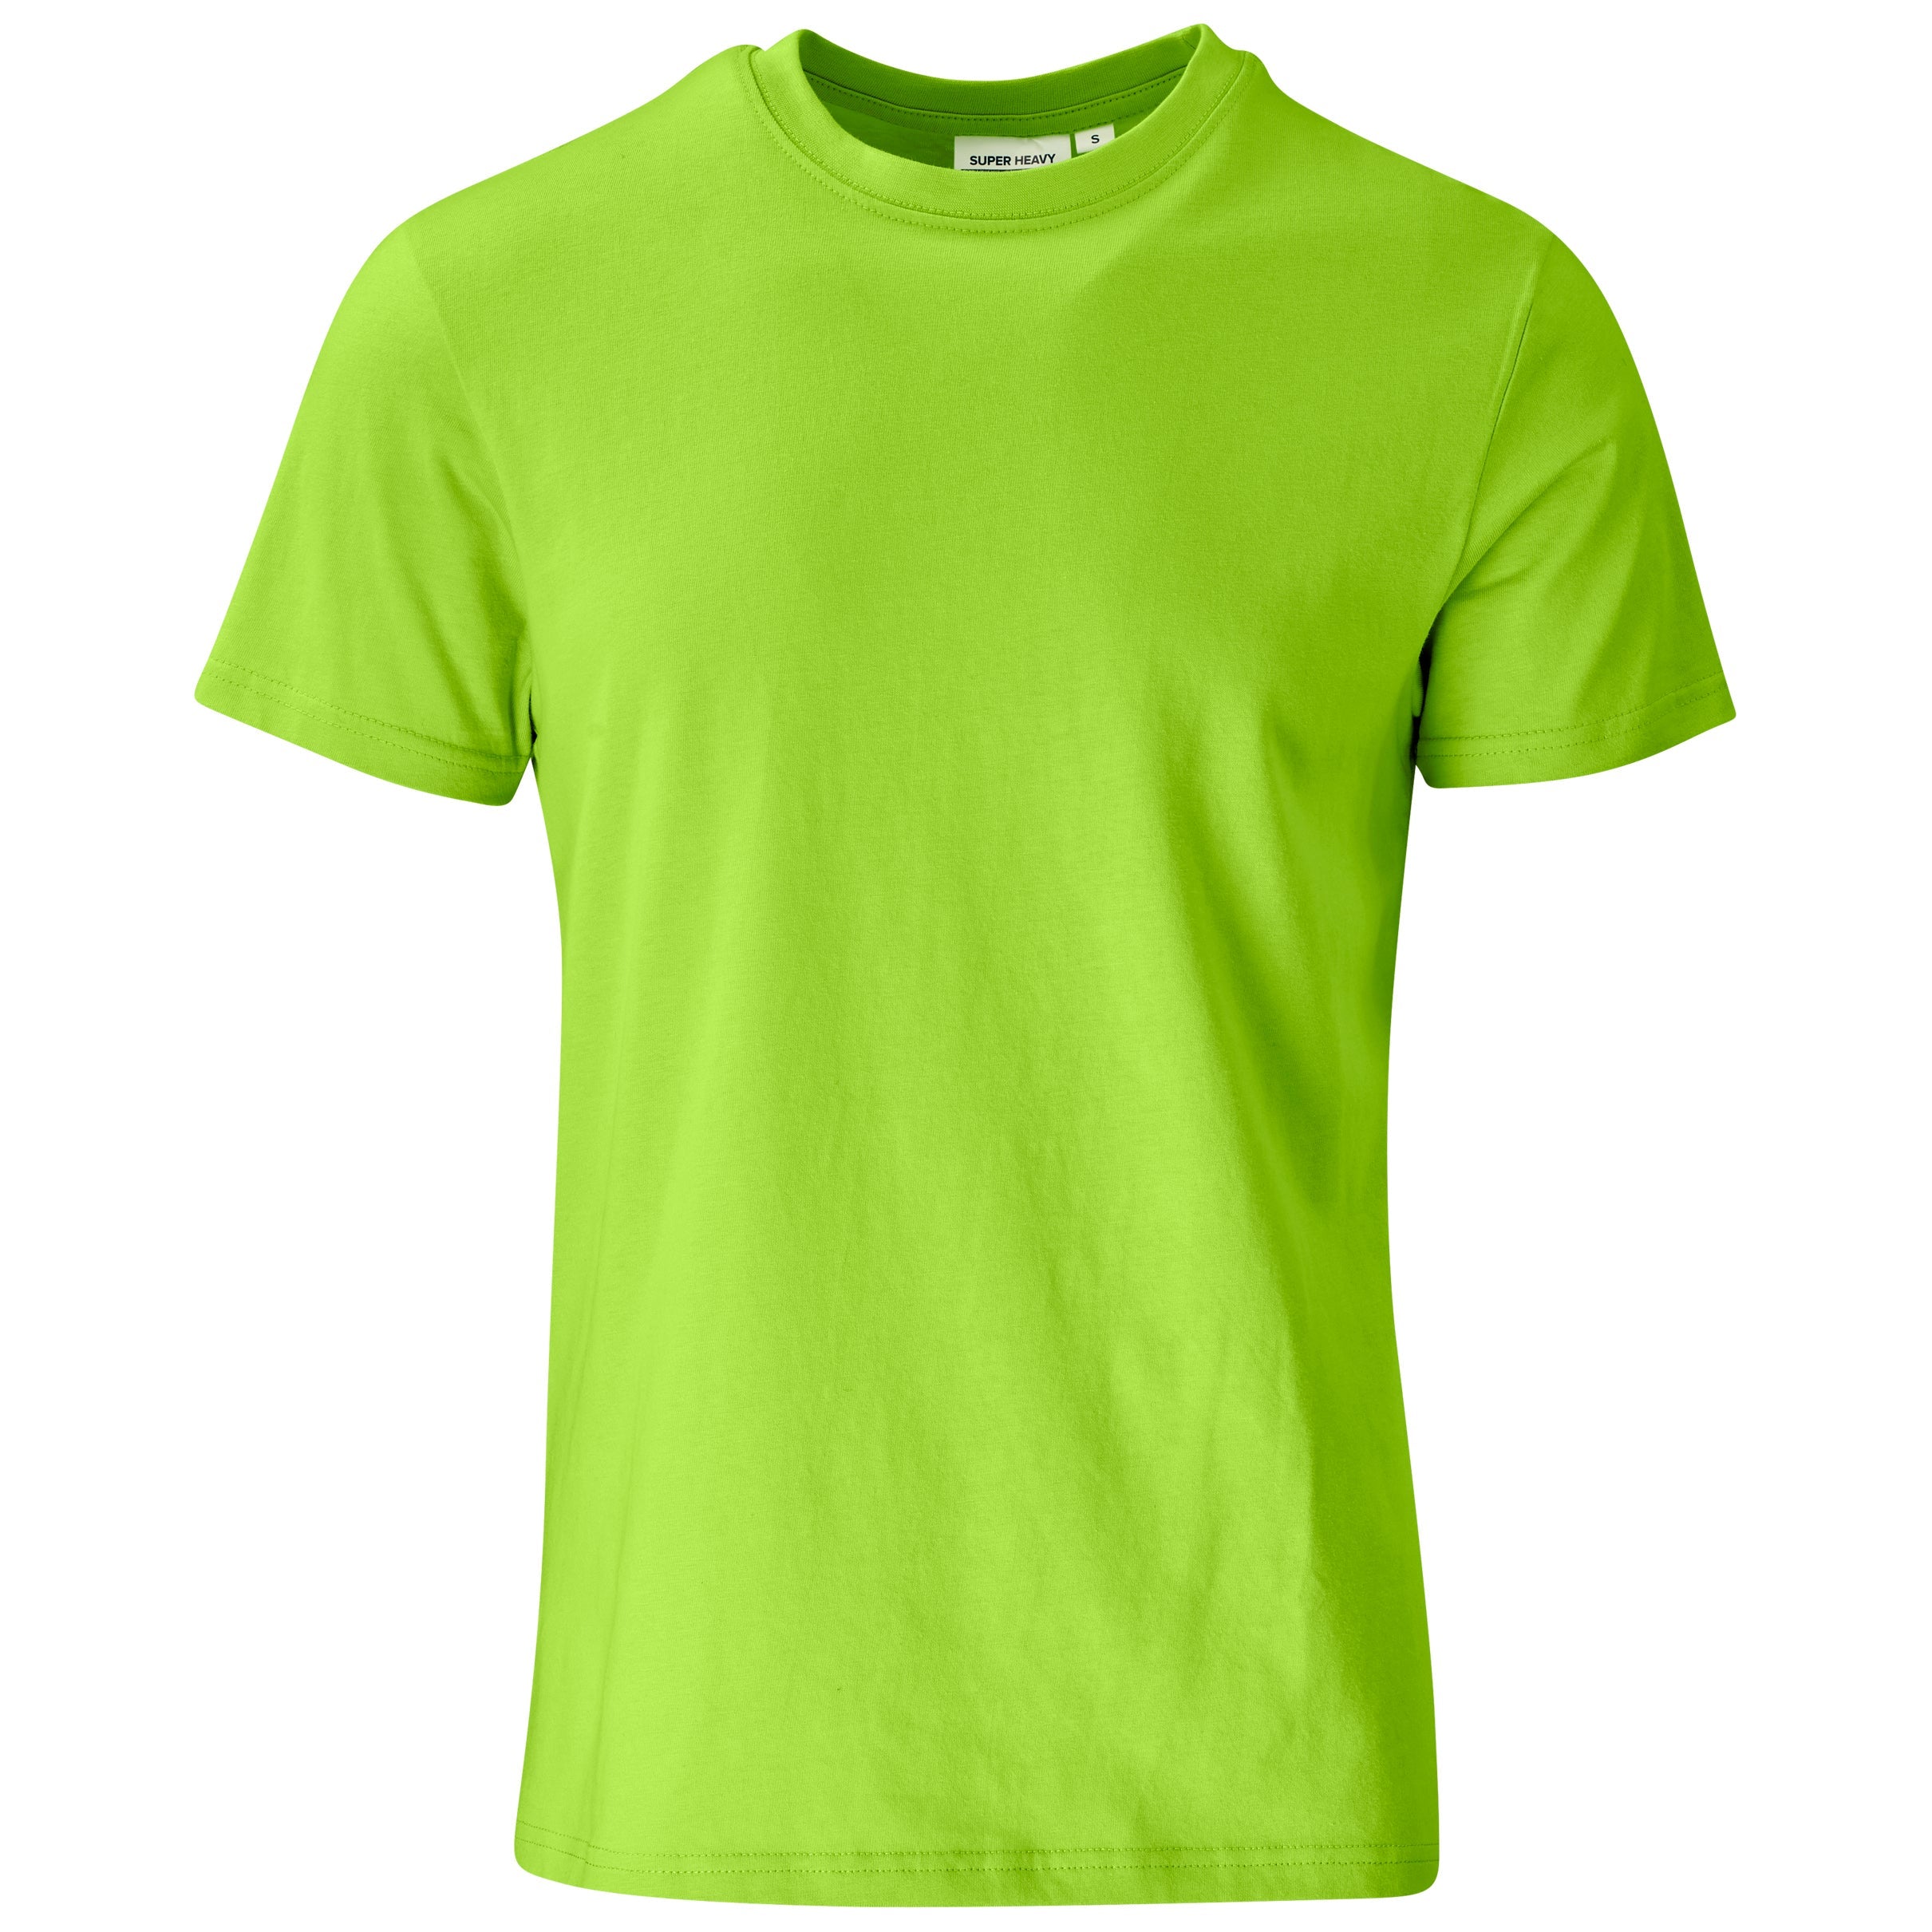 Unisex Super Club 180 T-Shirt-L-Lime-L